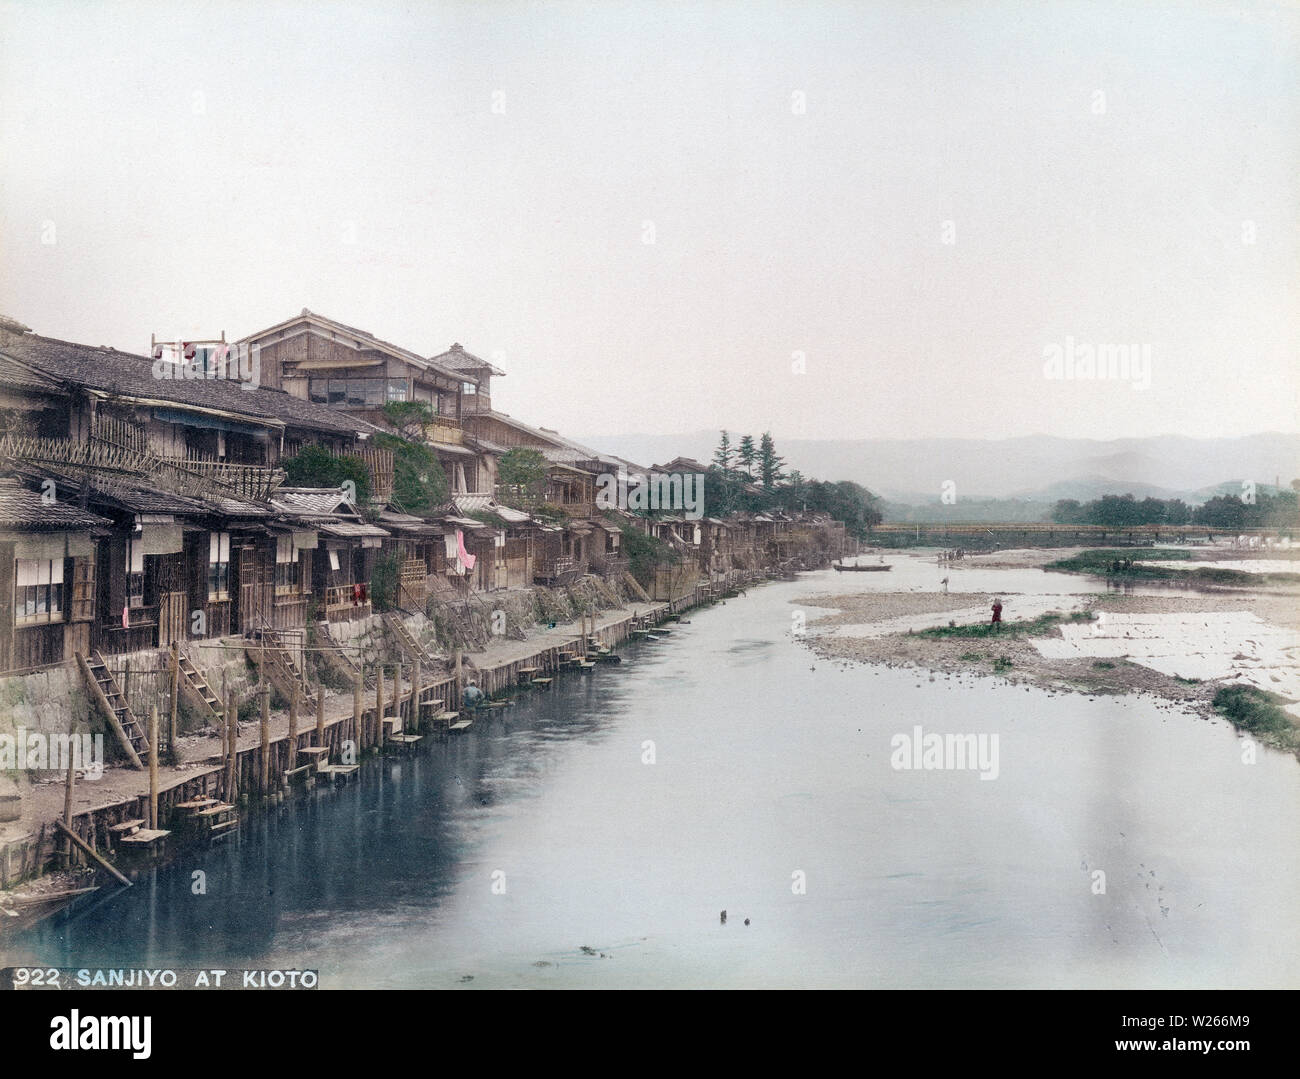 [1890s Japan - Häuser entlang Kamogaw, Kyoto] - einen schönen Blick auf Restaurants und Gasthöfe entlang der Fluss Kamogawa in Kyoto. Dieses Foto wurde wahrscheinlich von Sanjo Ohashi genommen. Die Brücke im Rücken ist wahrscheinlich Nijo - Hashi. 19 Vintage albumen Foto. Stockfoto